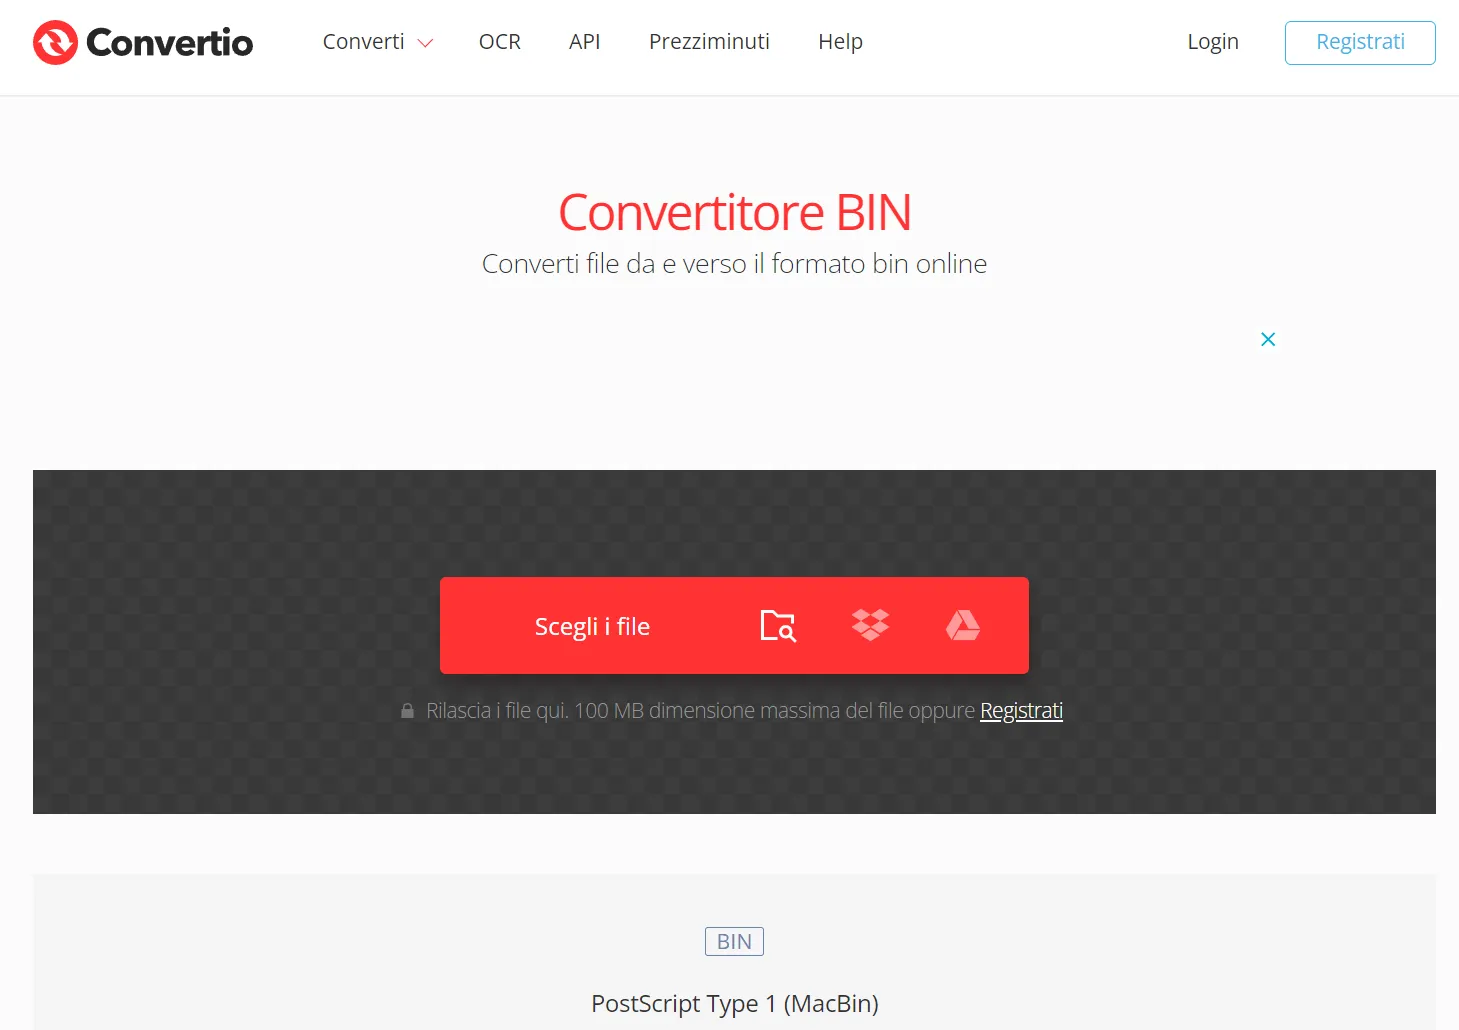 Convertire da BIN a PDF online tramite Convertio